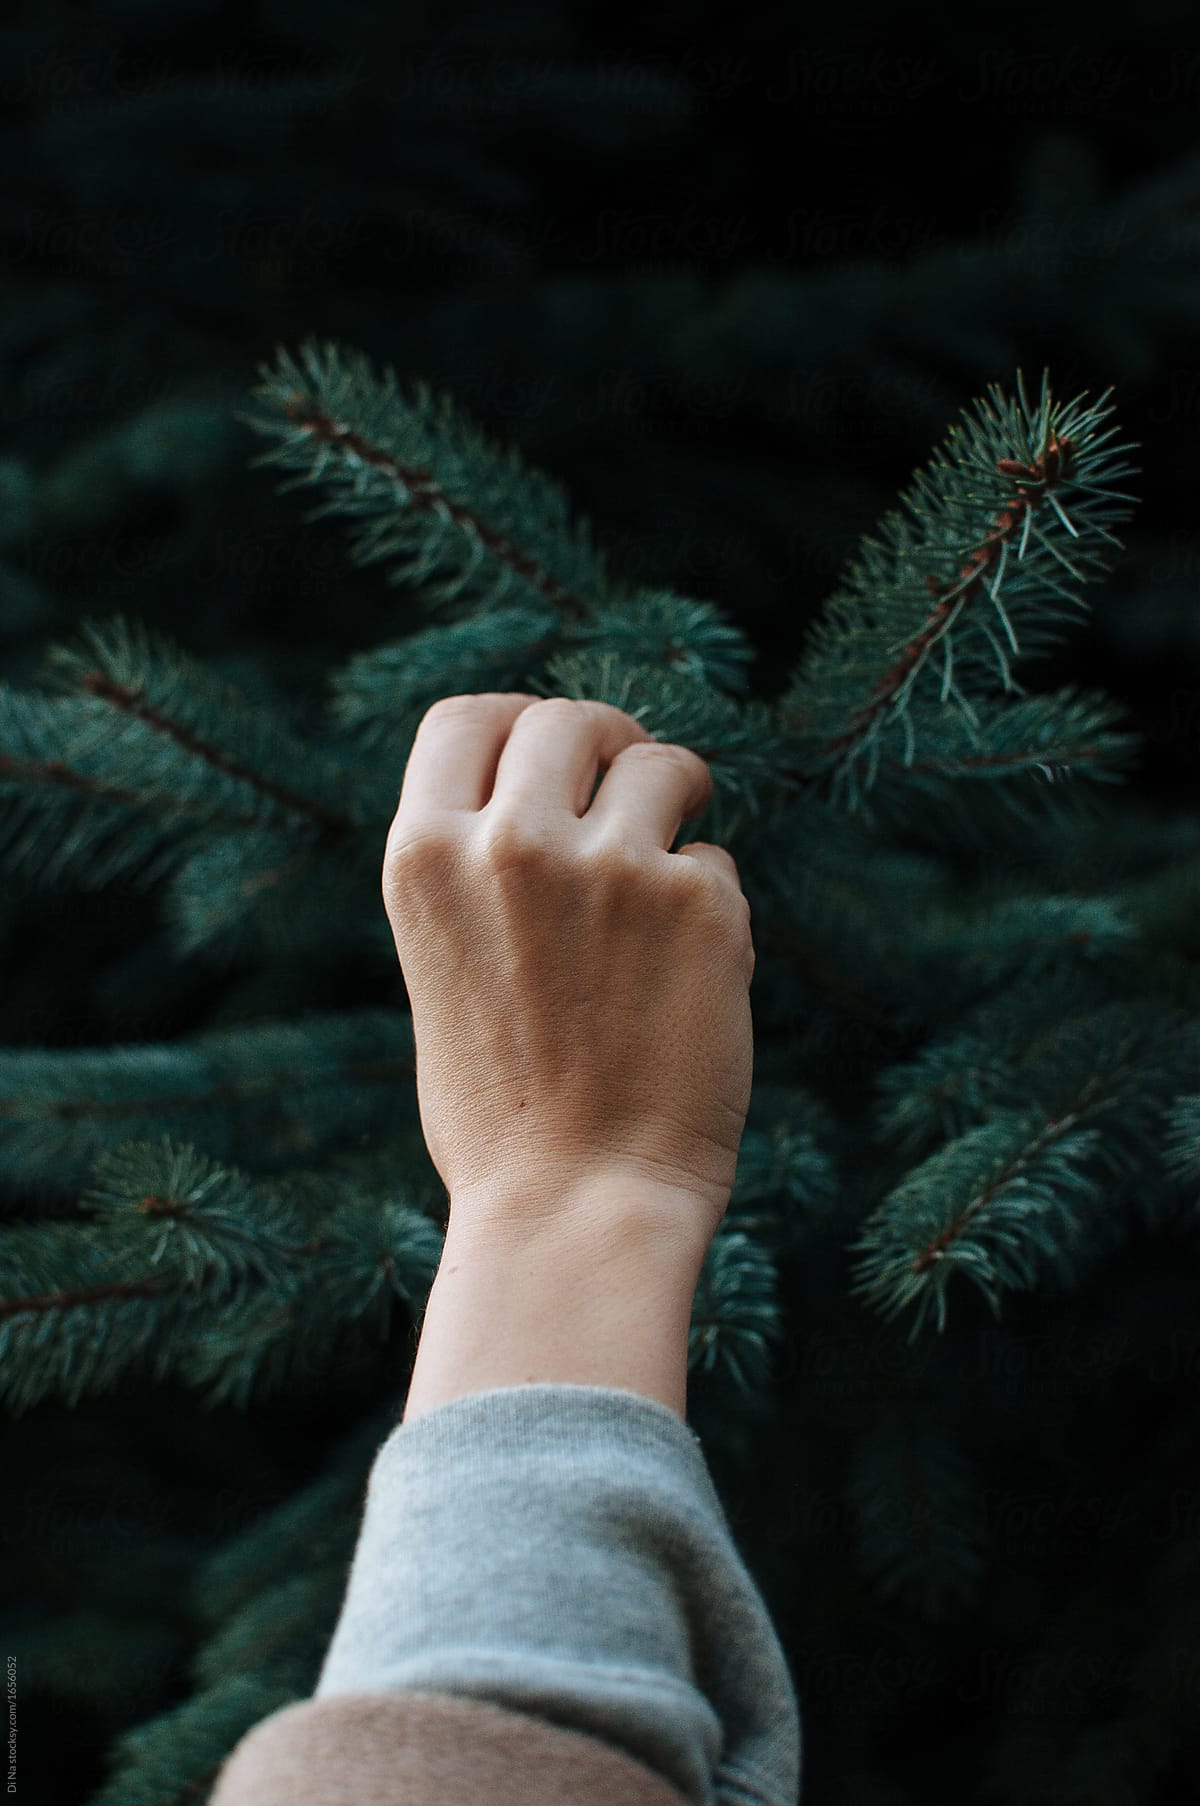 Touching a pine tree